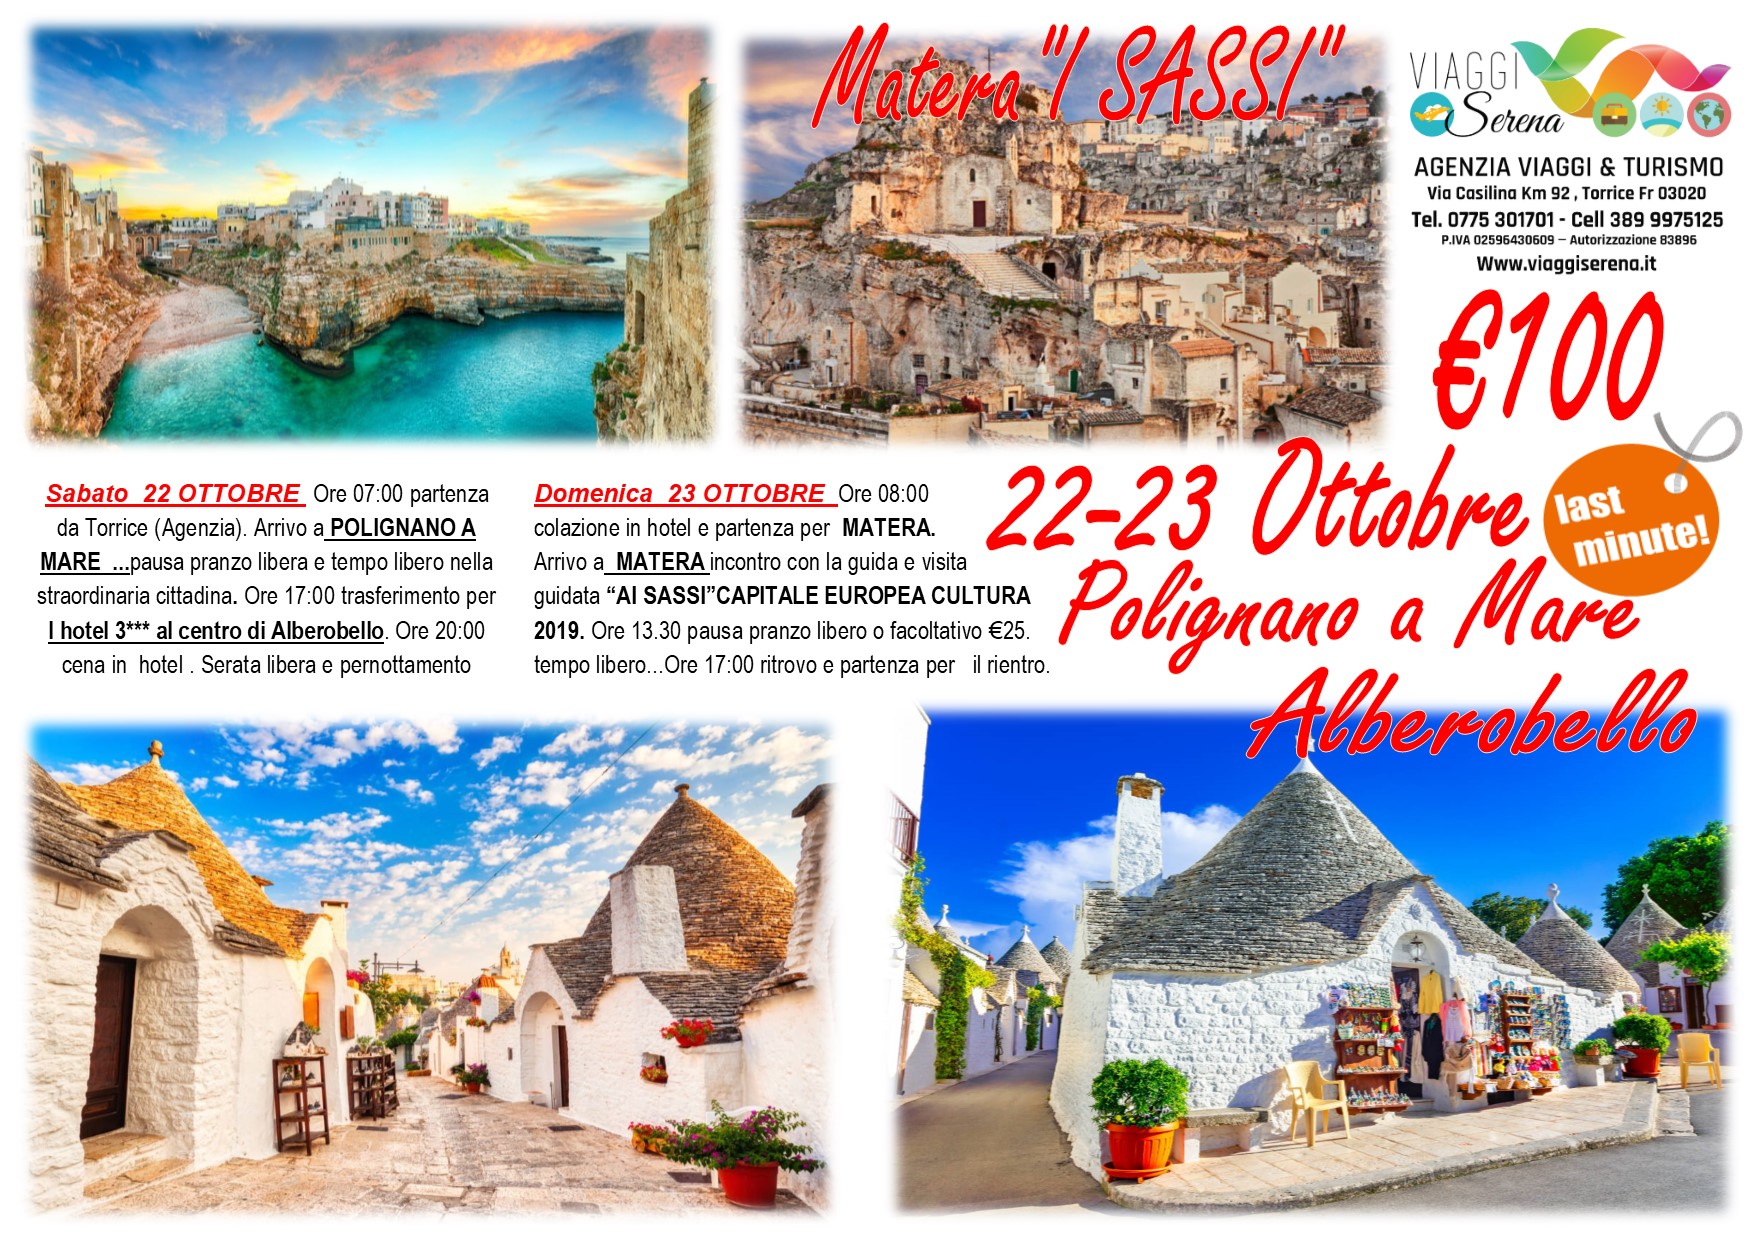 Viaggi di Gruppo: “I Sassi di Matera”, Alberobello e Polignano a mare 22-23 Ottobre € 100,00